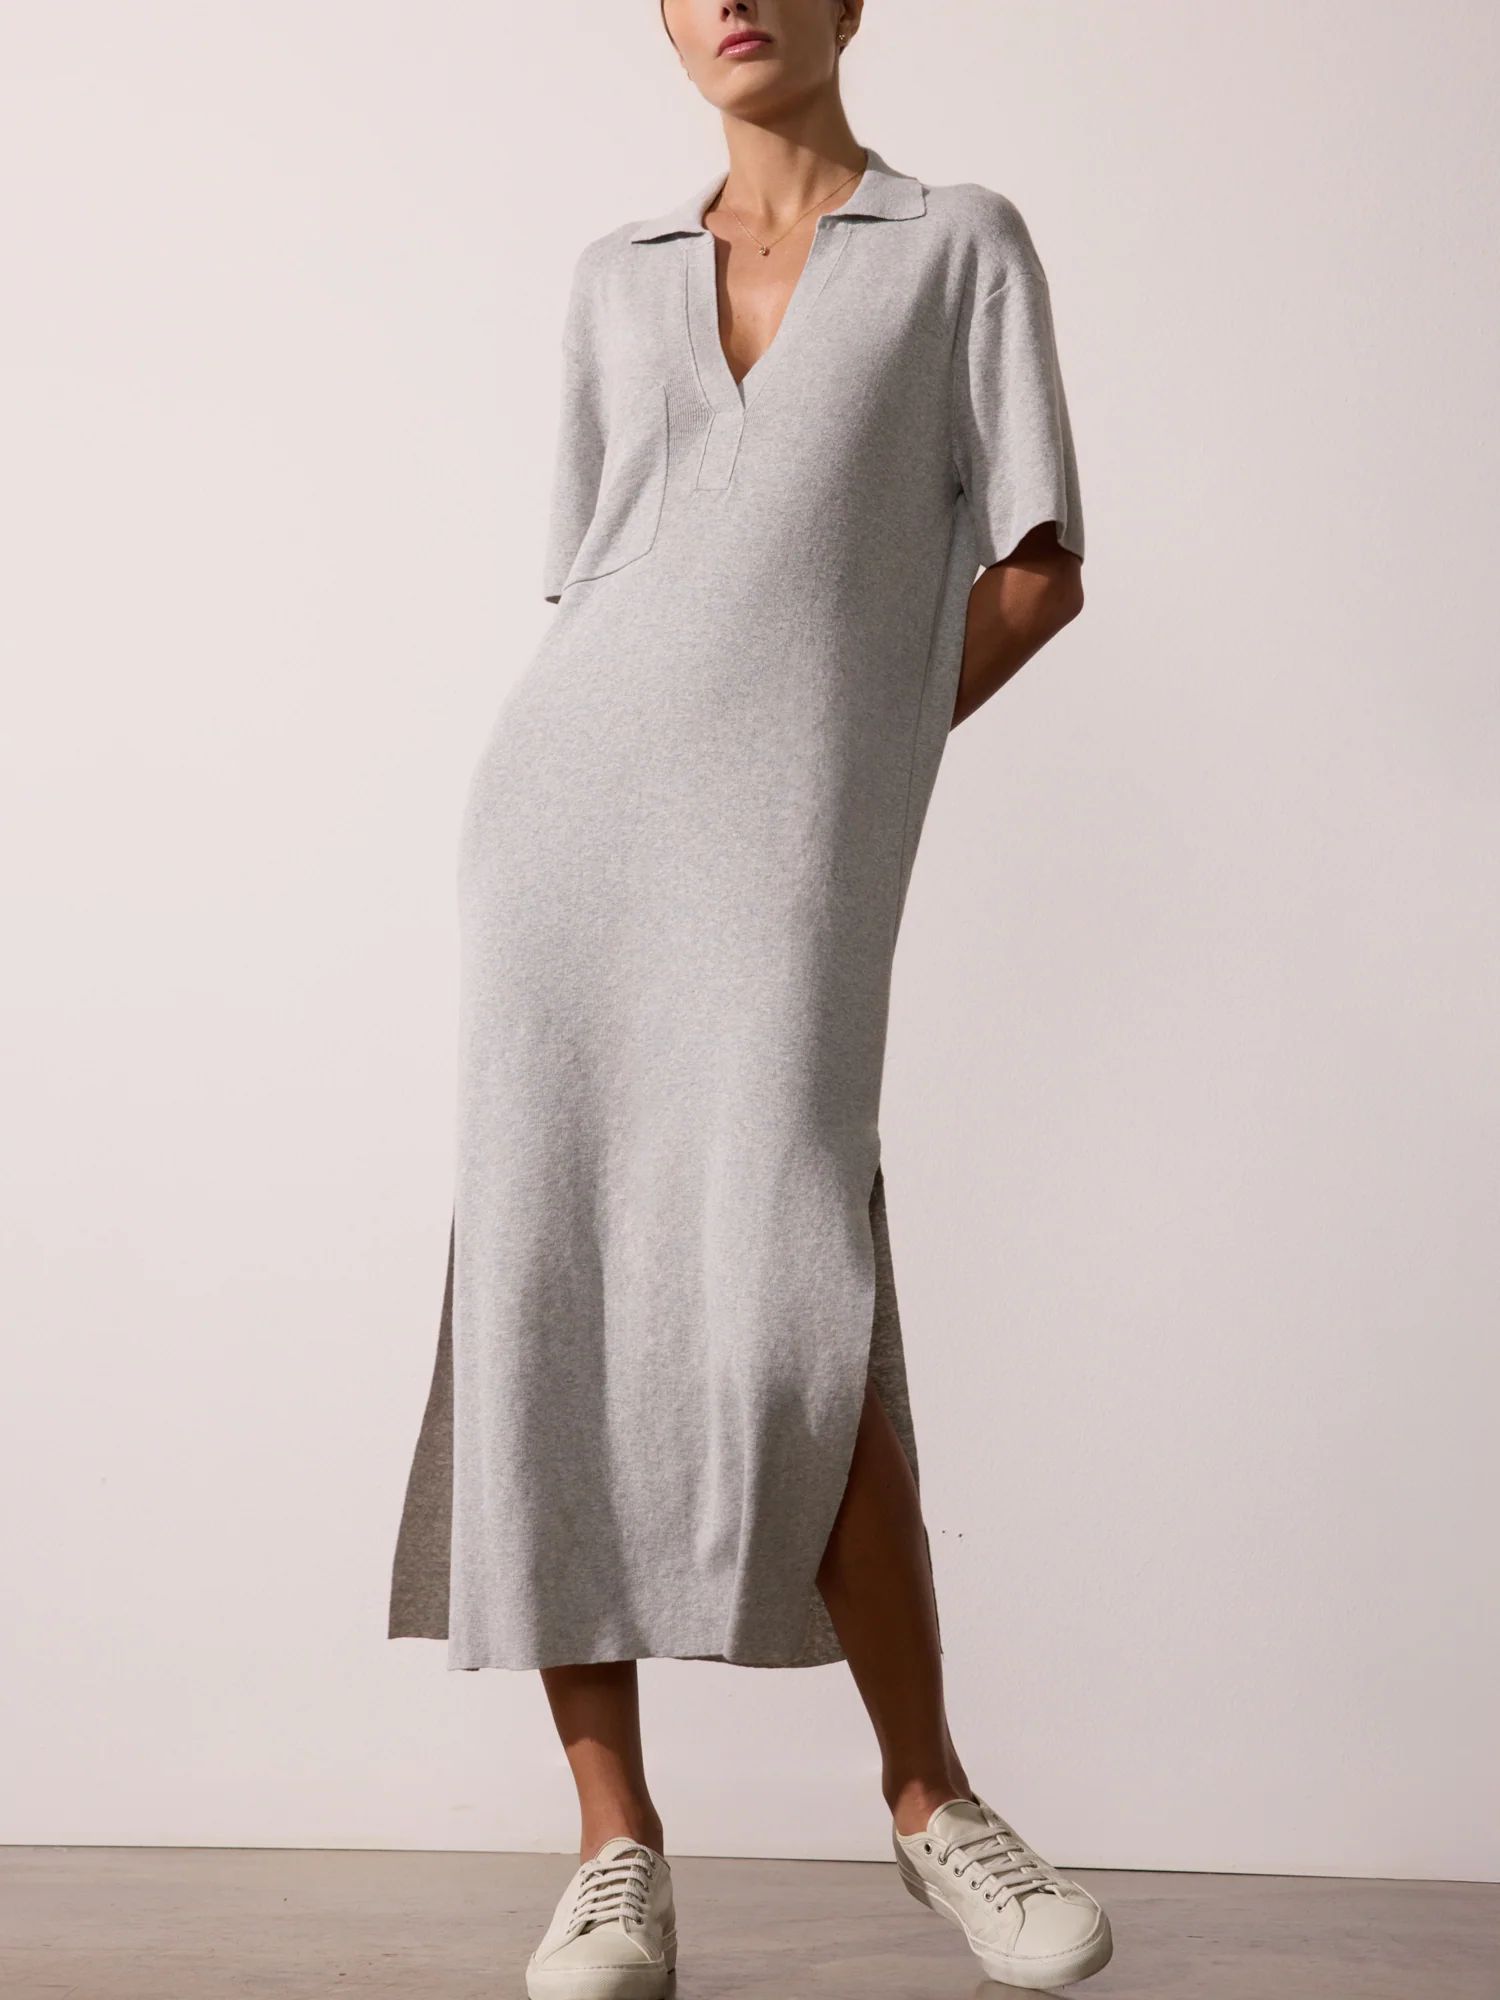 Women's Fai Polo Dress in Salton Grey Mélange | Brochu Walker | Brochu Walker